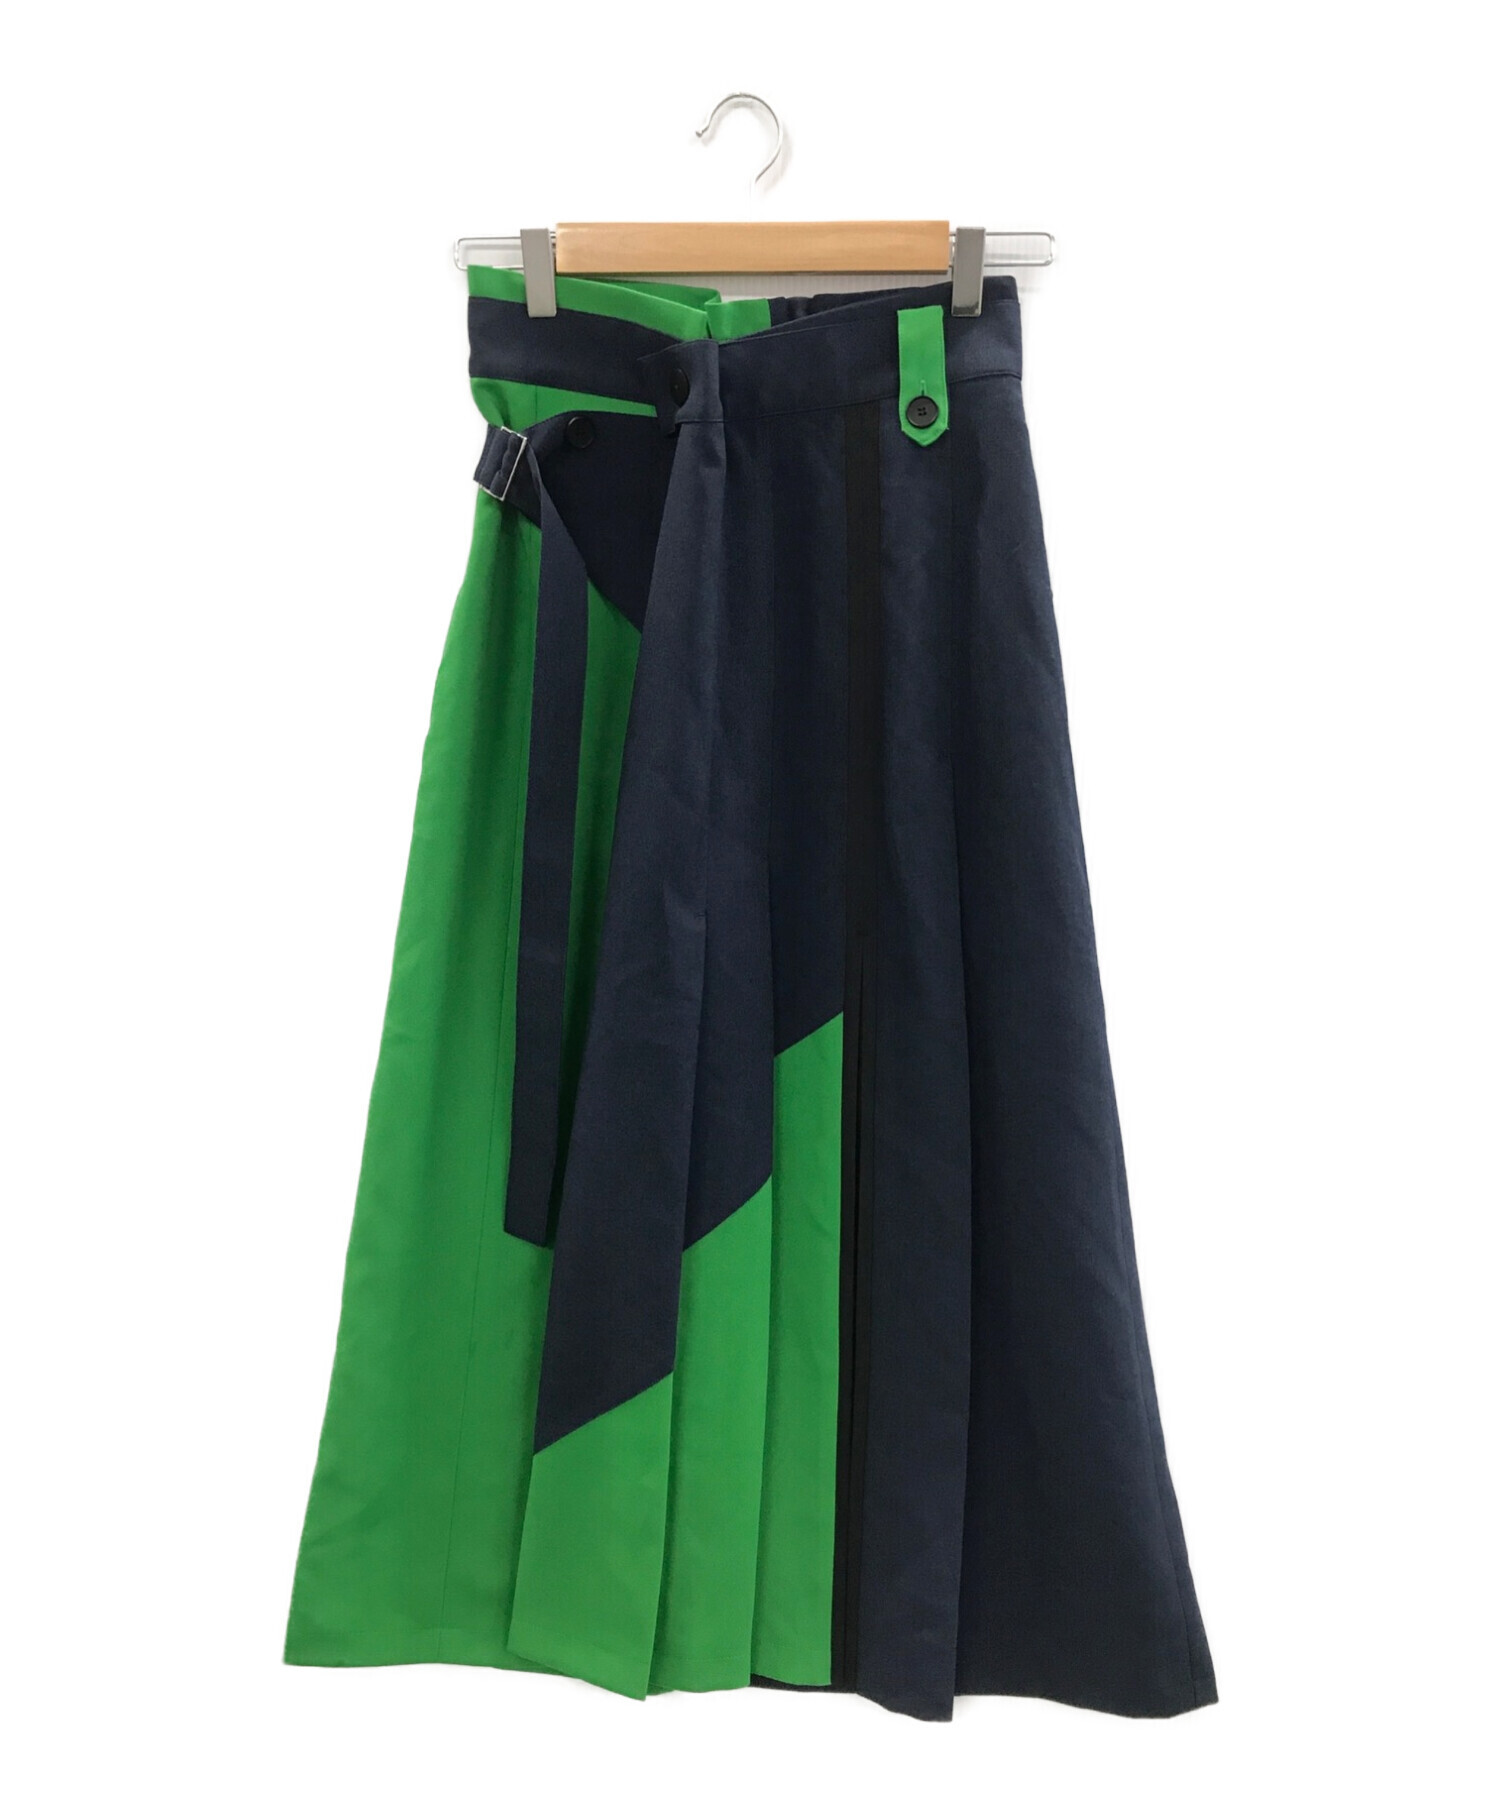 UNITED TOKYO (ユナイテッドトウキョウ) ステアーズバイカラースカート ネイビー サイズ:2 未使用品